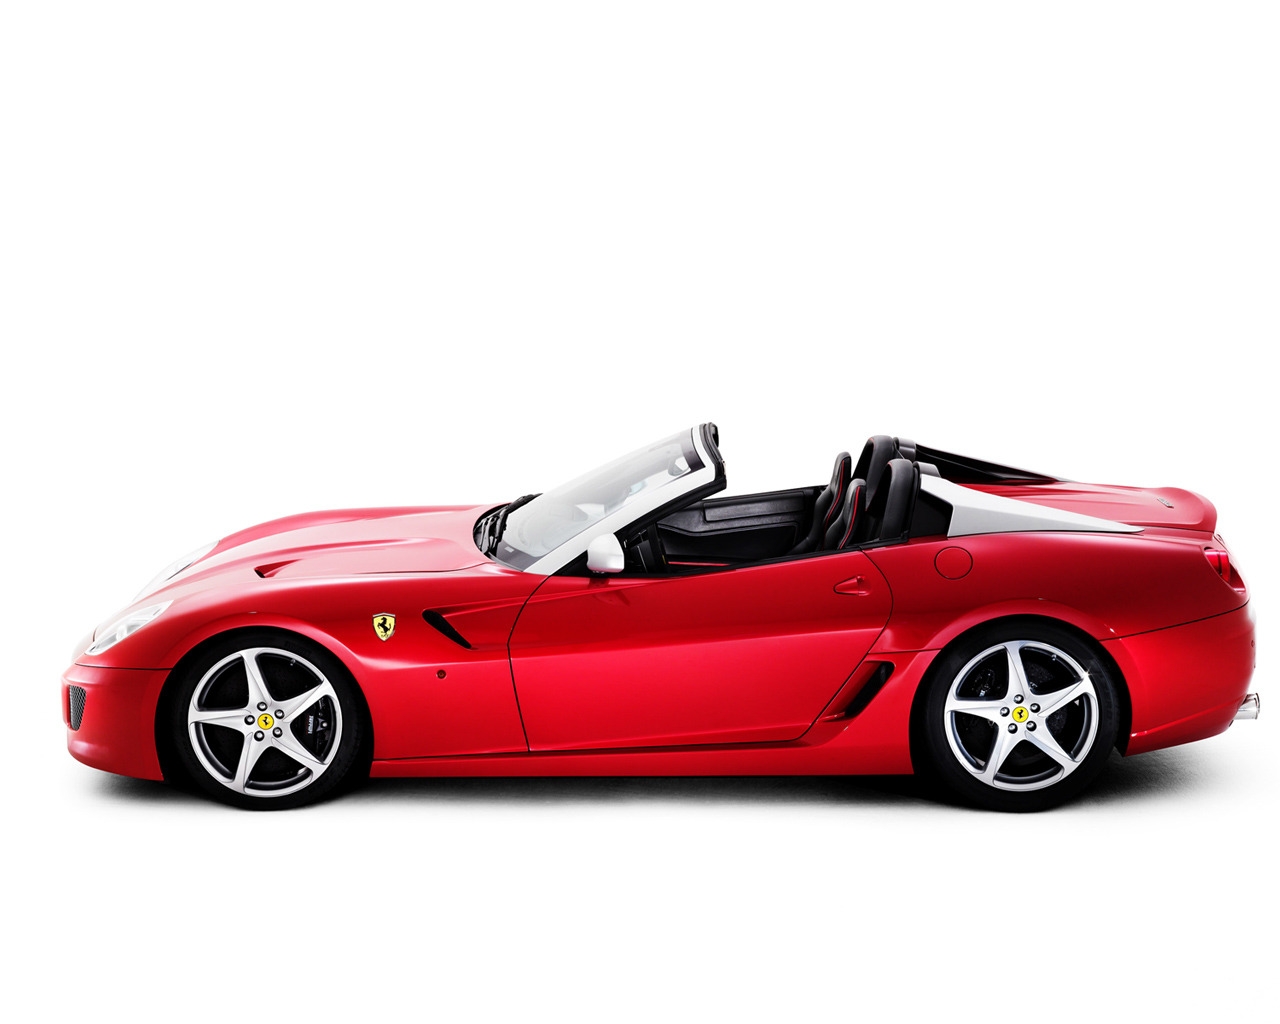 Ferrari SA Aperta Studio for 1280 x 1024 resolution